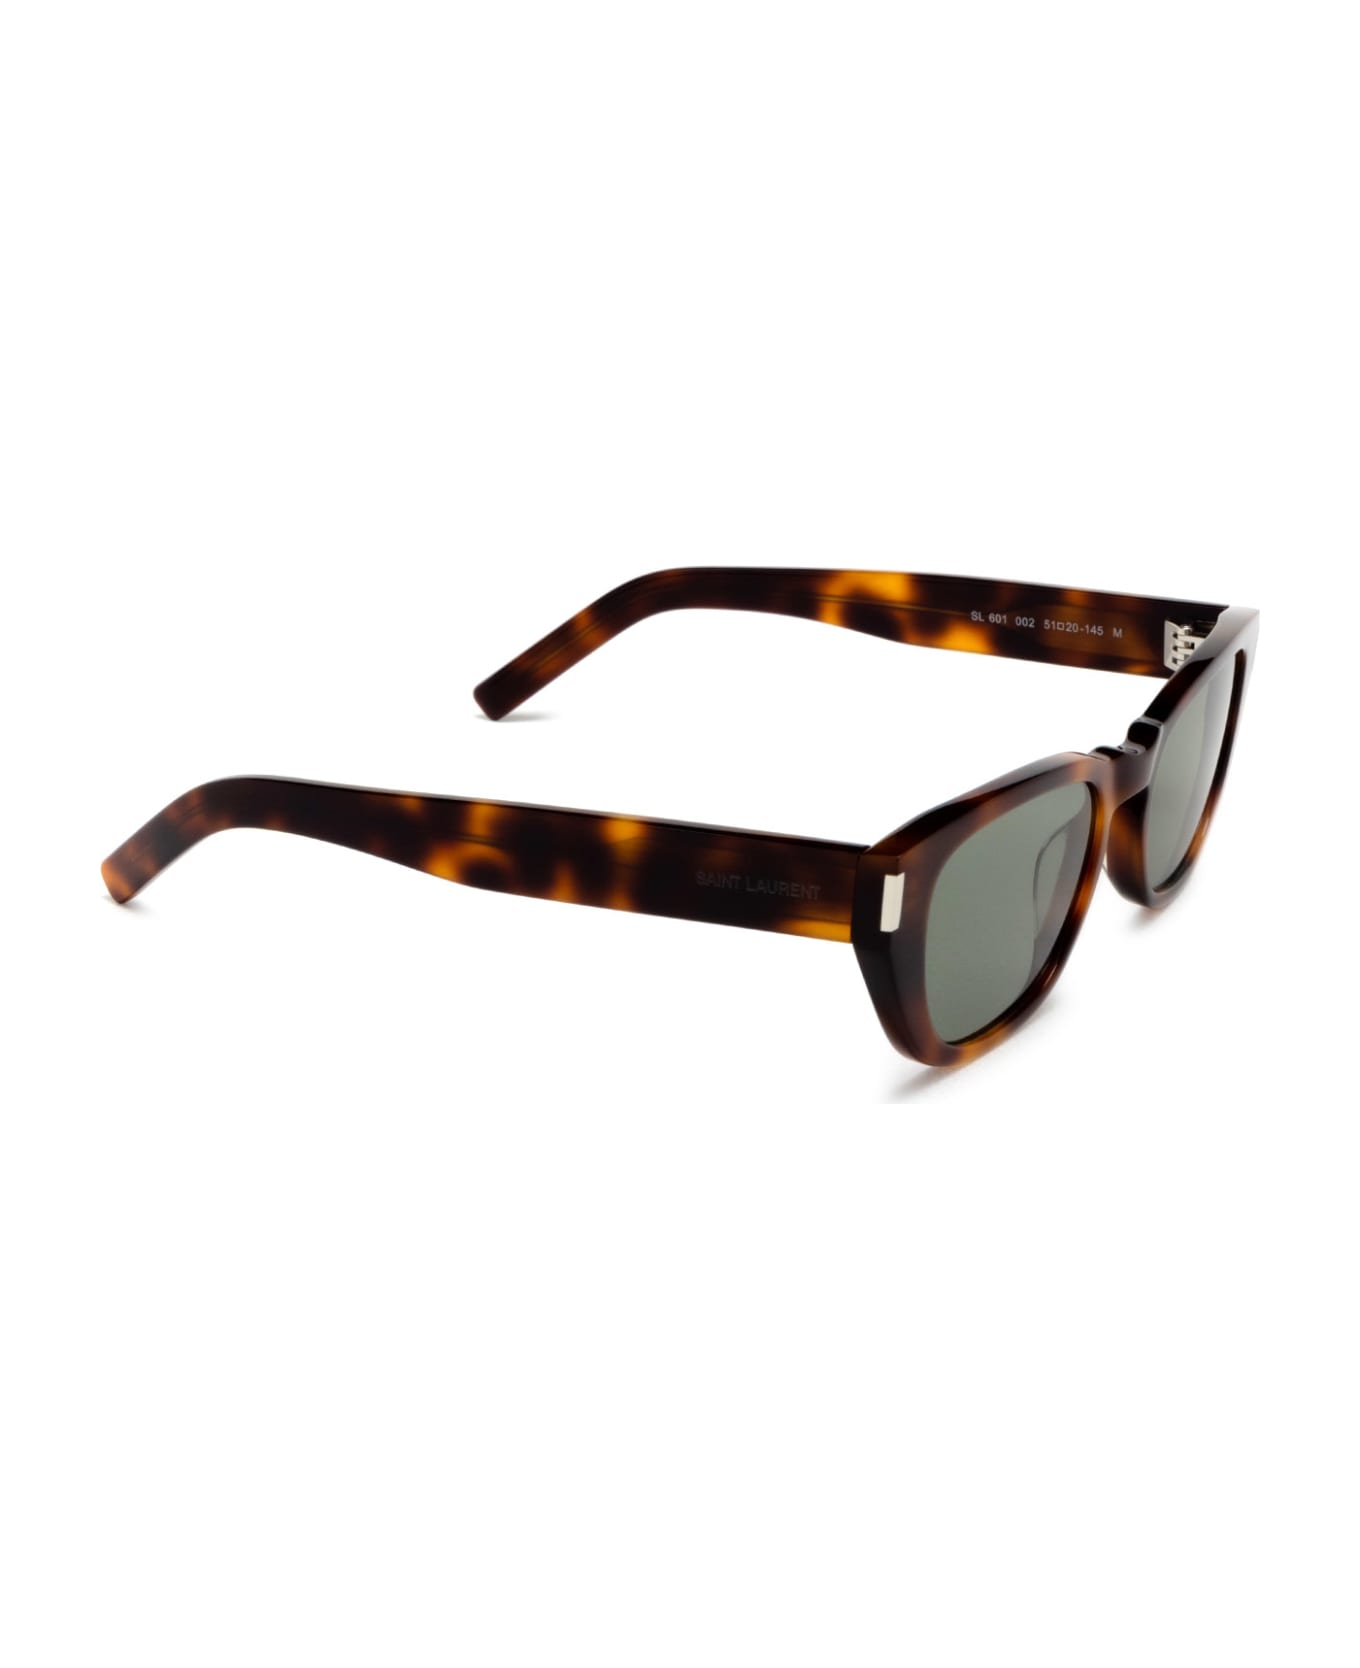 Saint Laurent Eyewear Sl 601 Havana Sunglasses - Havana